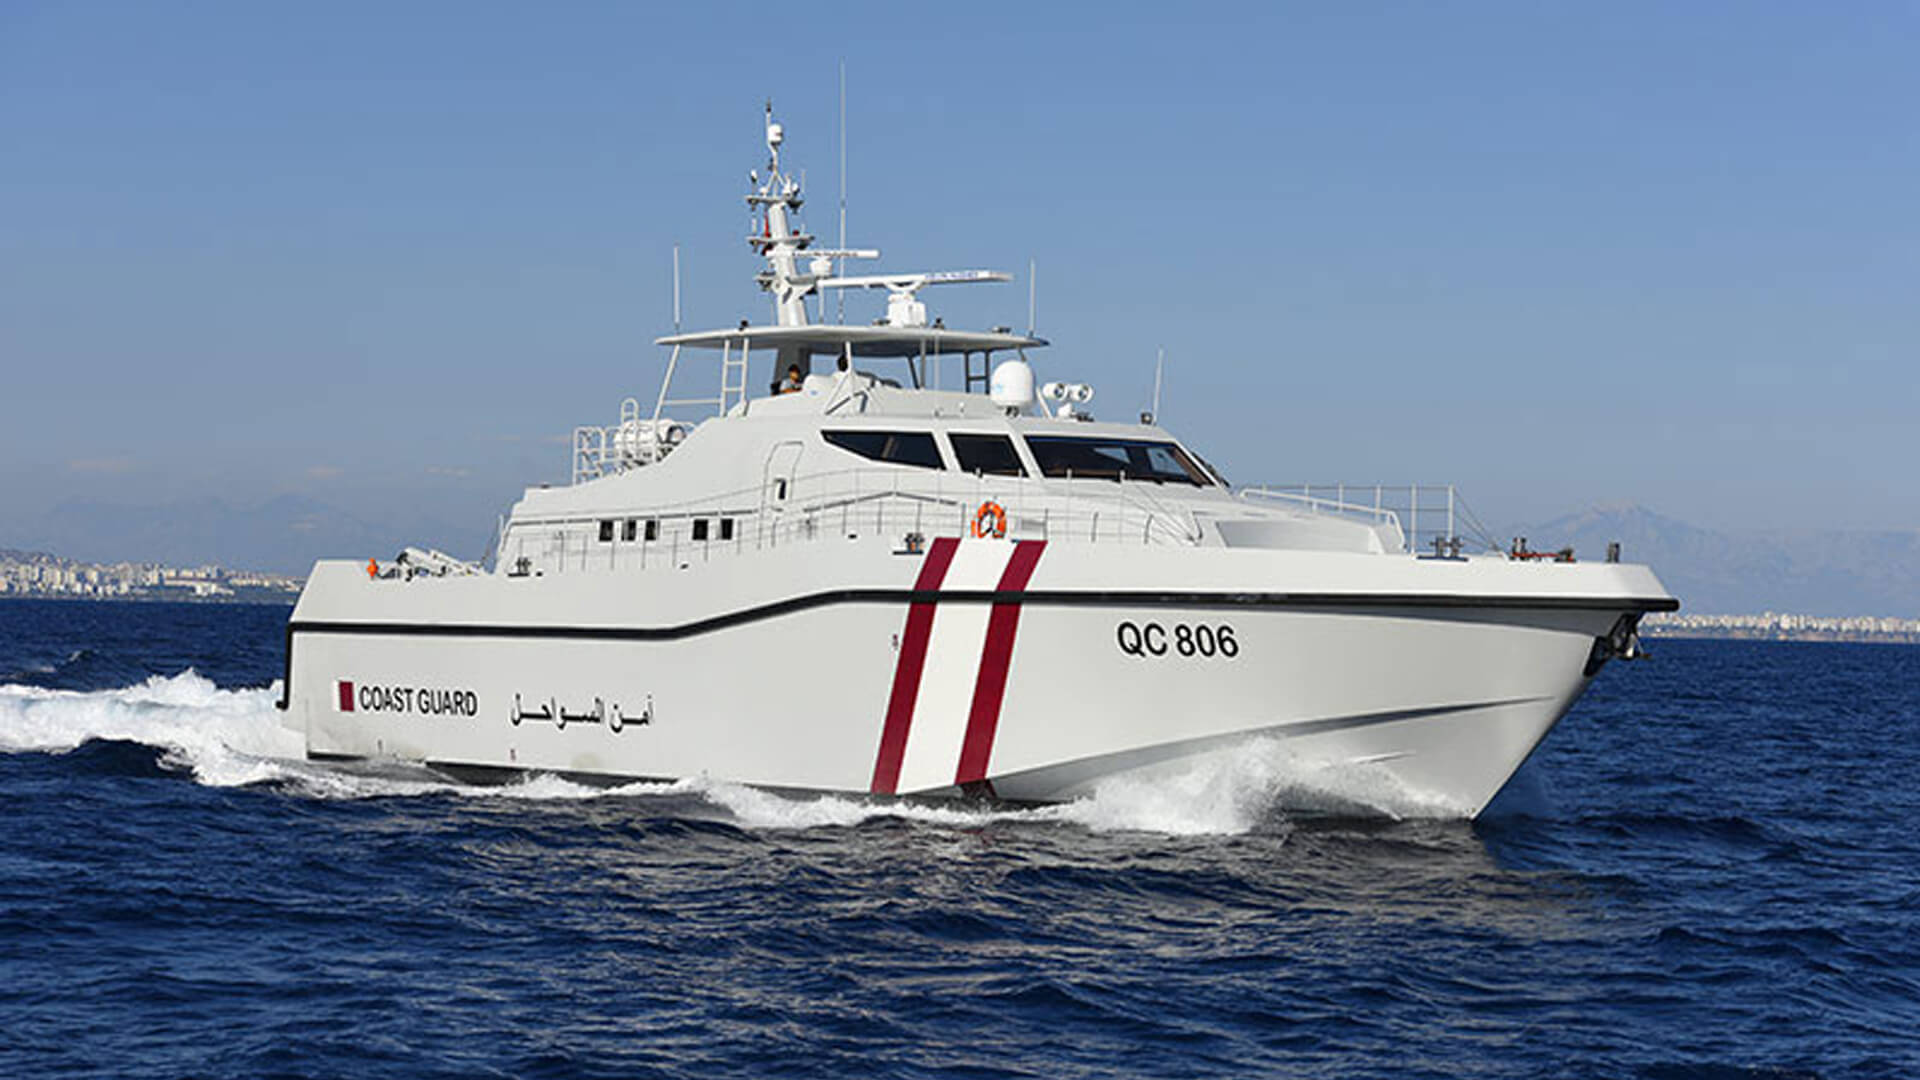 images/vessels/01-patrol-craft/02-series-hercules/05-ares-110-hercules/01.jpg